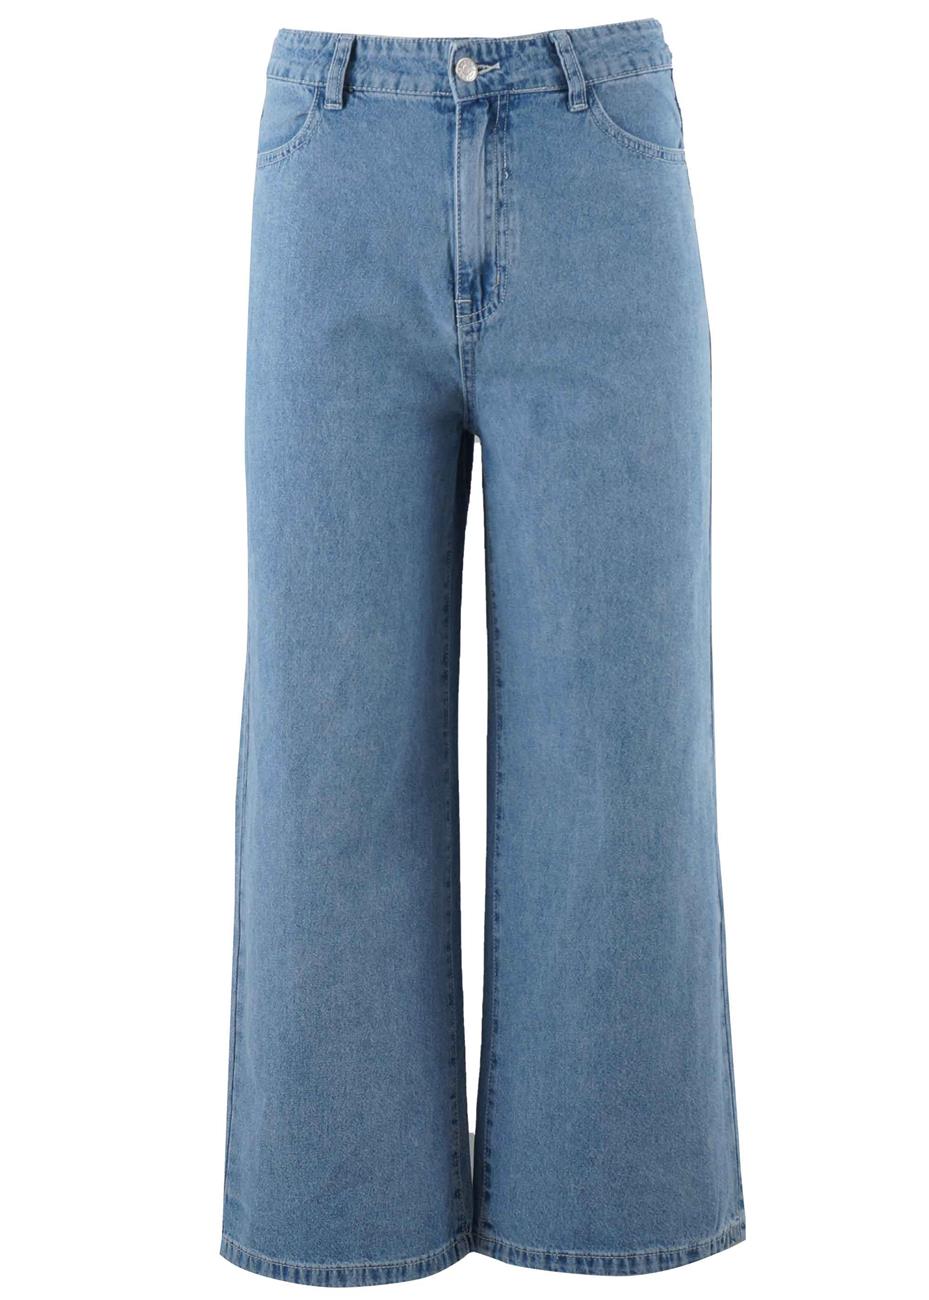 Γυναικέια ψηλόμεση παντελόνα jean croped αστραγάλου.Denim collection.